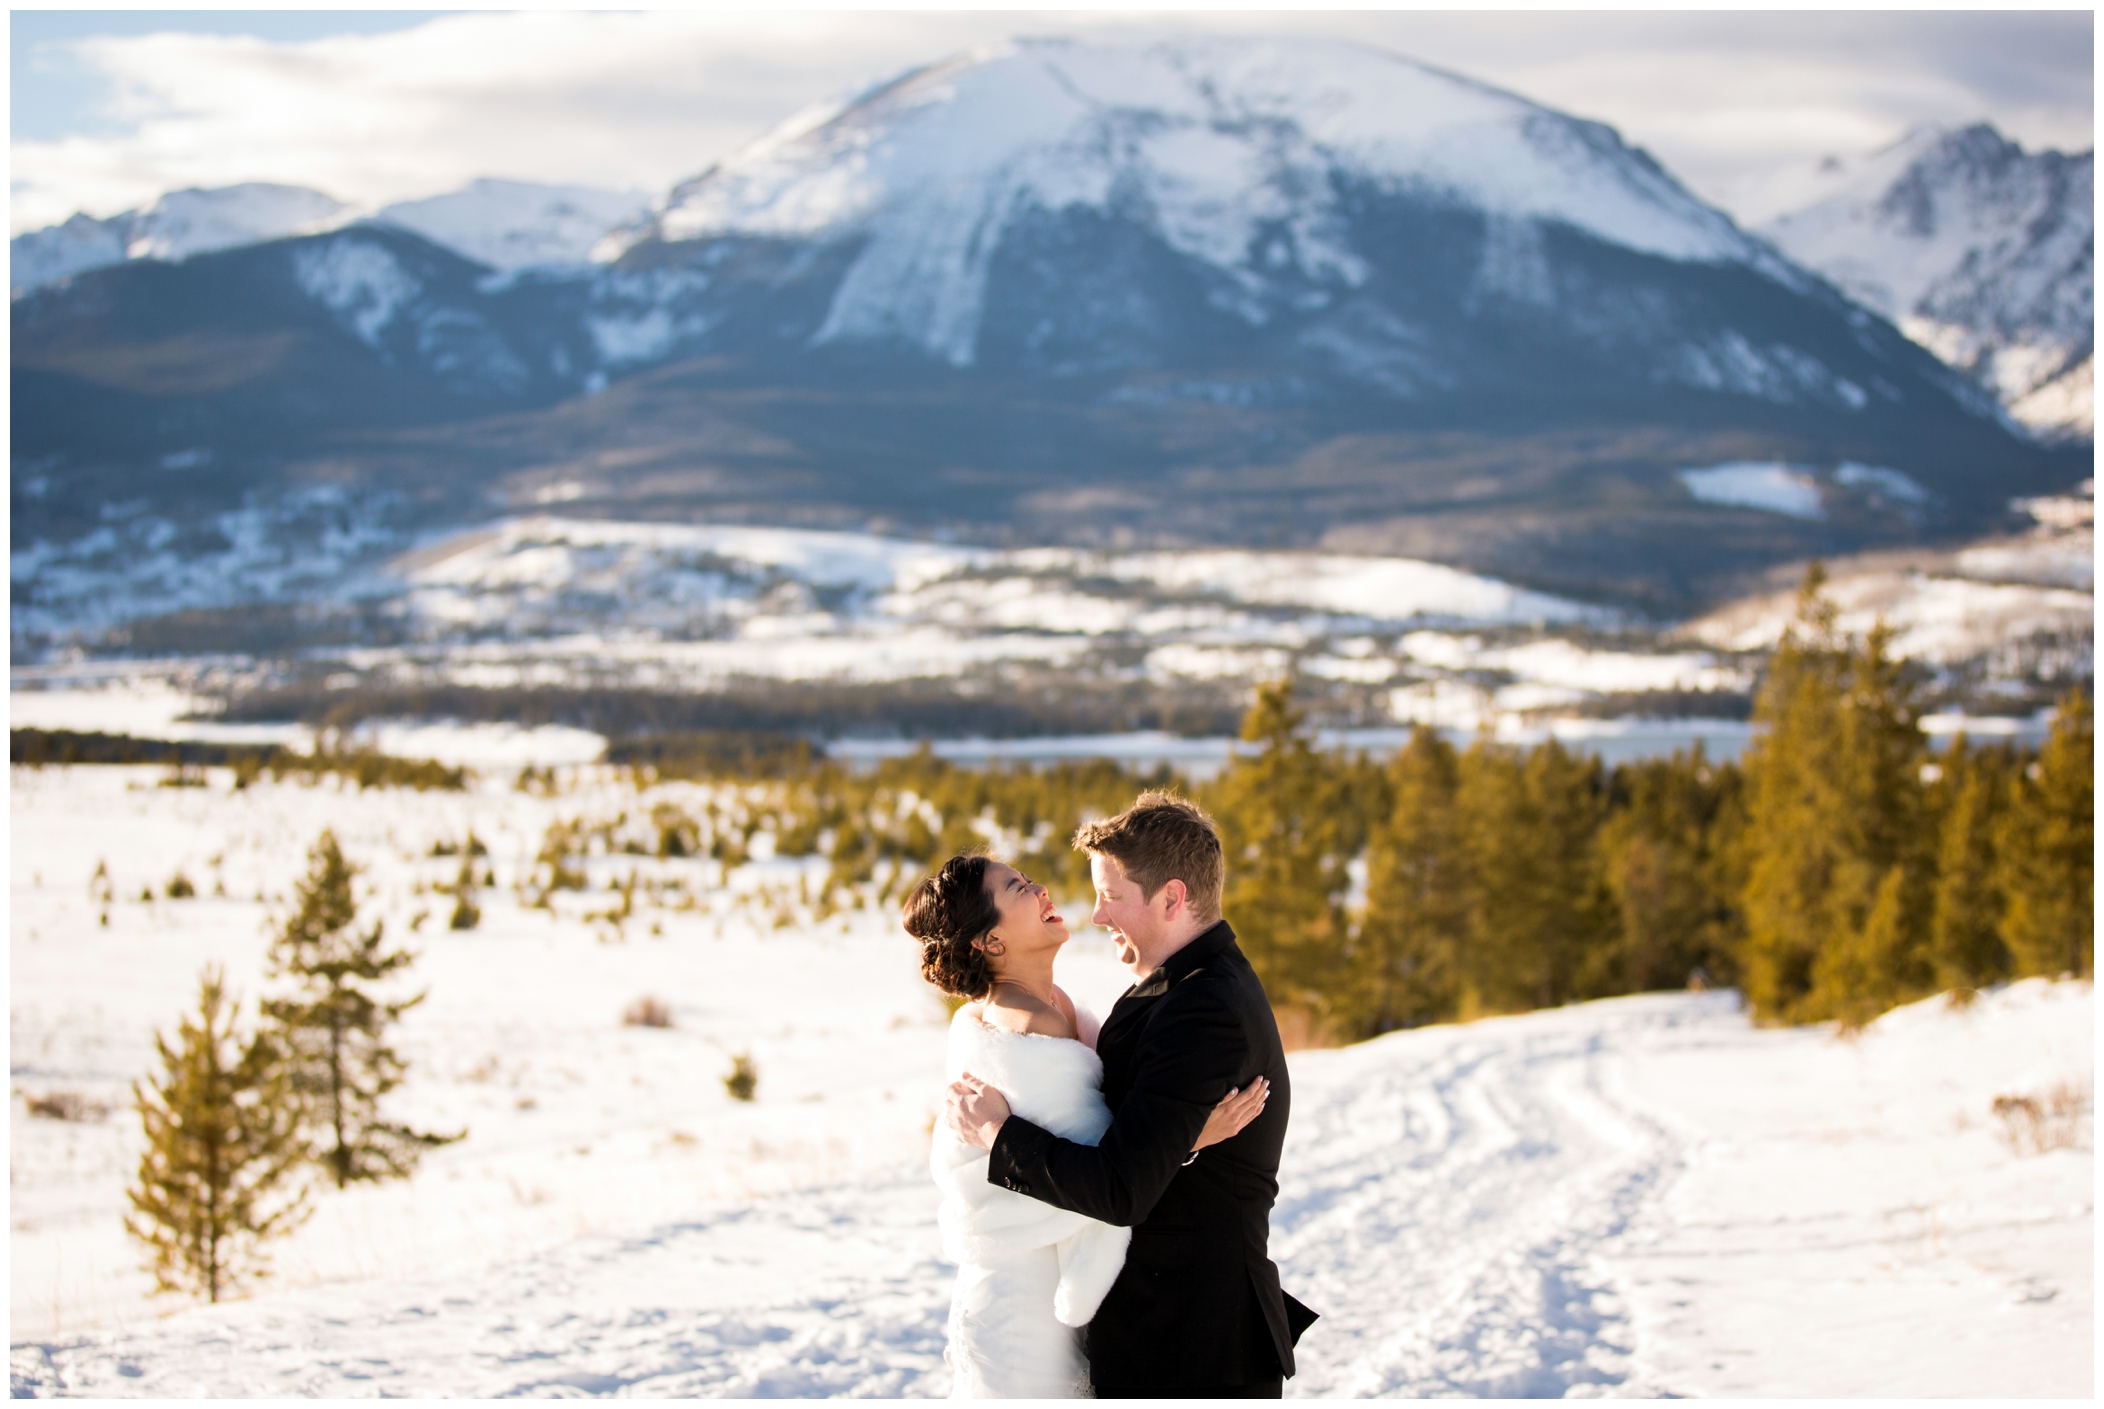 Colorado winter wedding photos by Breckenridge wedding photographer Plum Pretty Photography